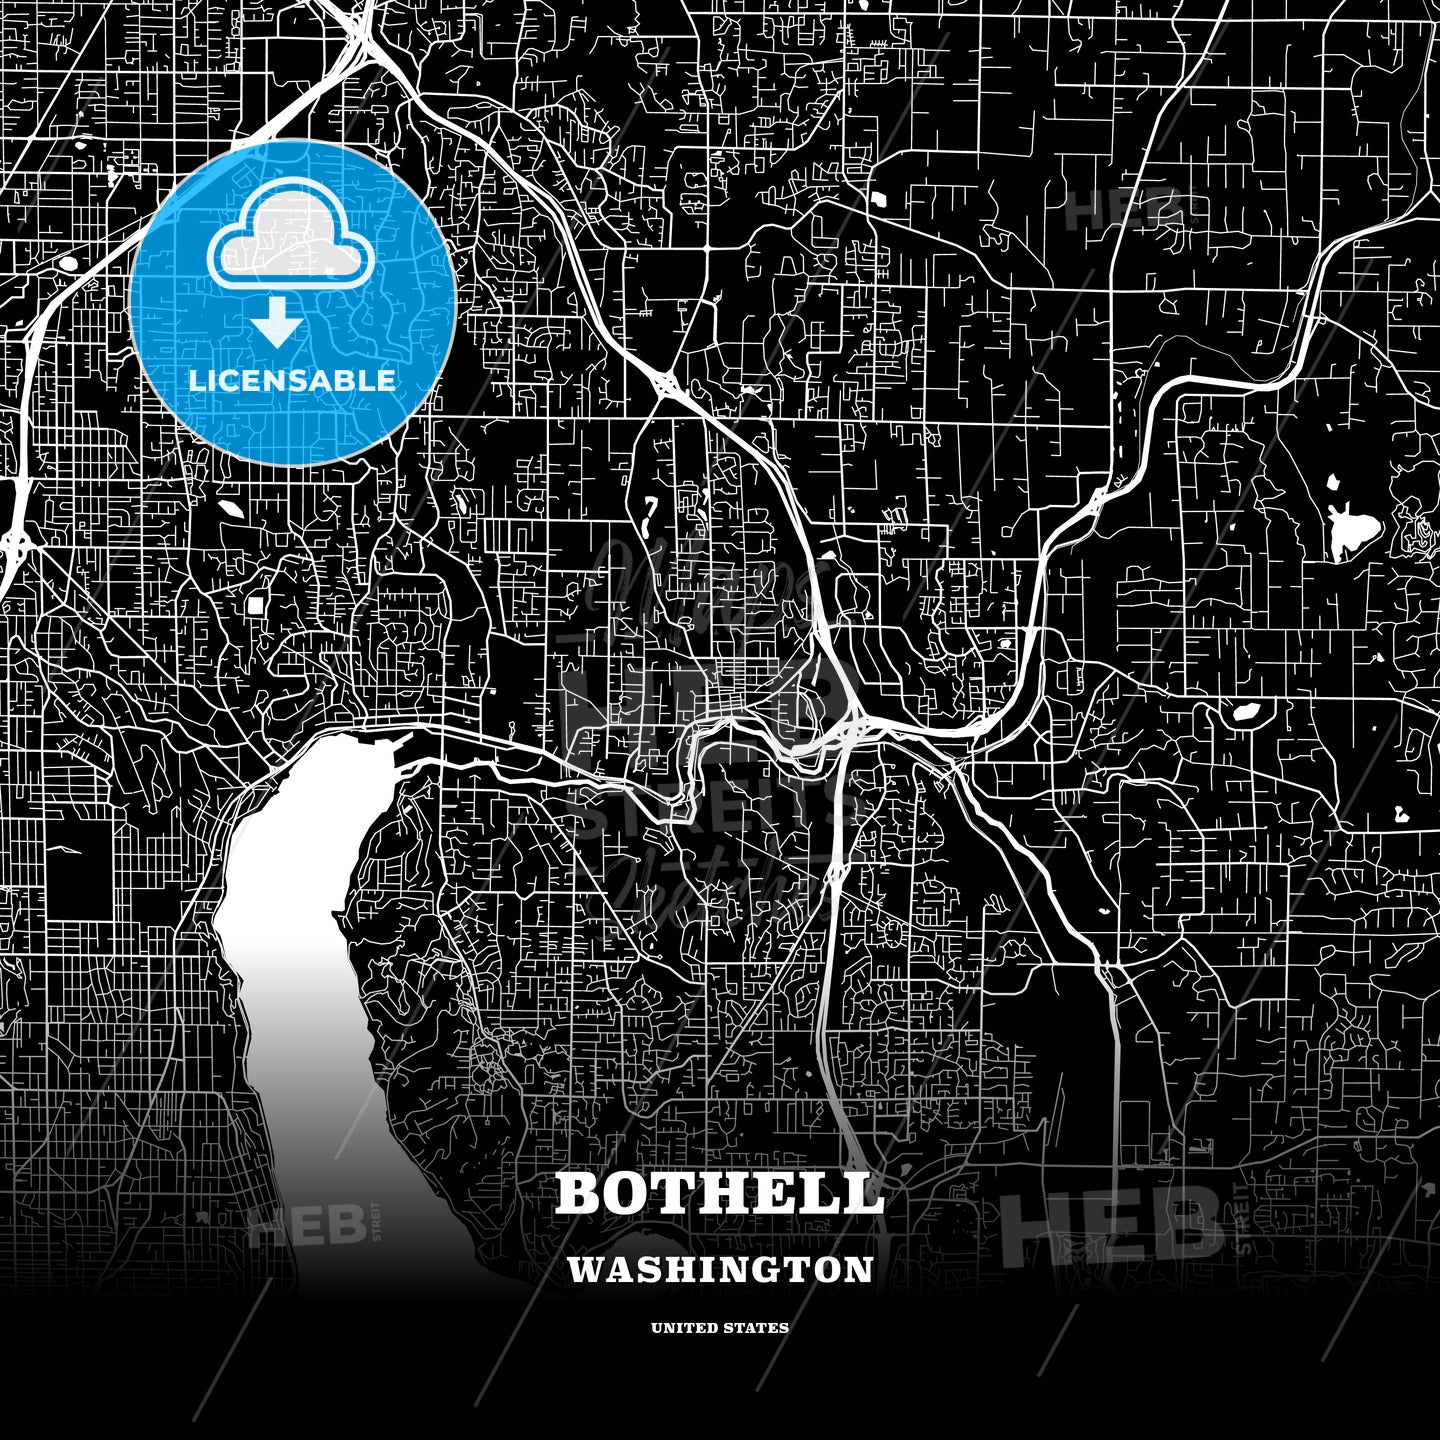 Bothell, Washington, USA map